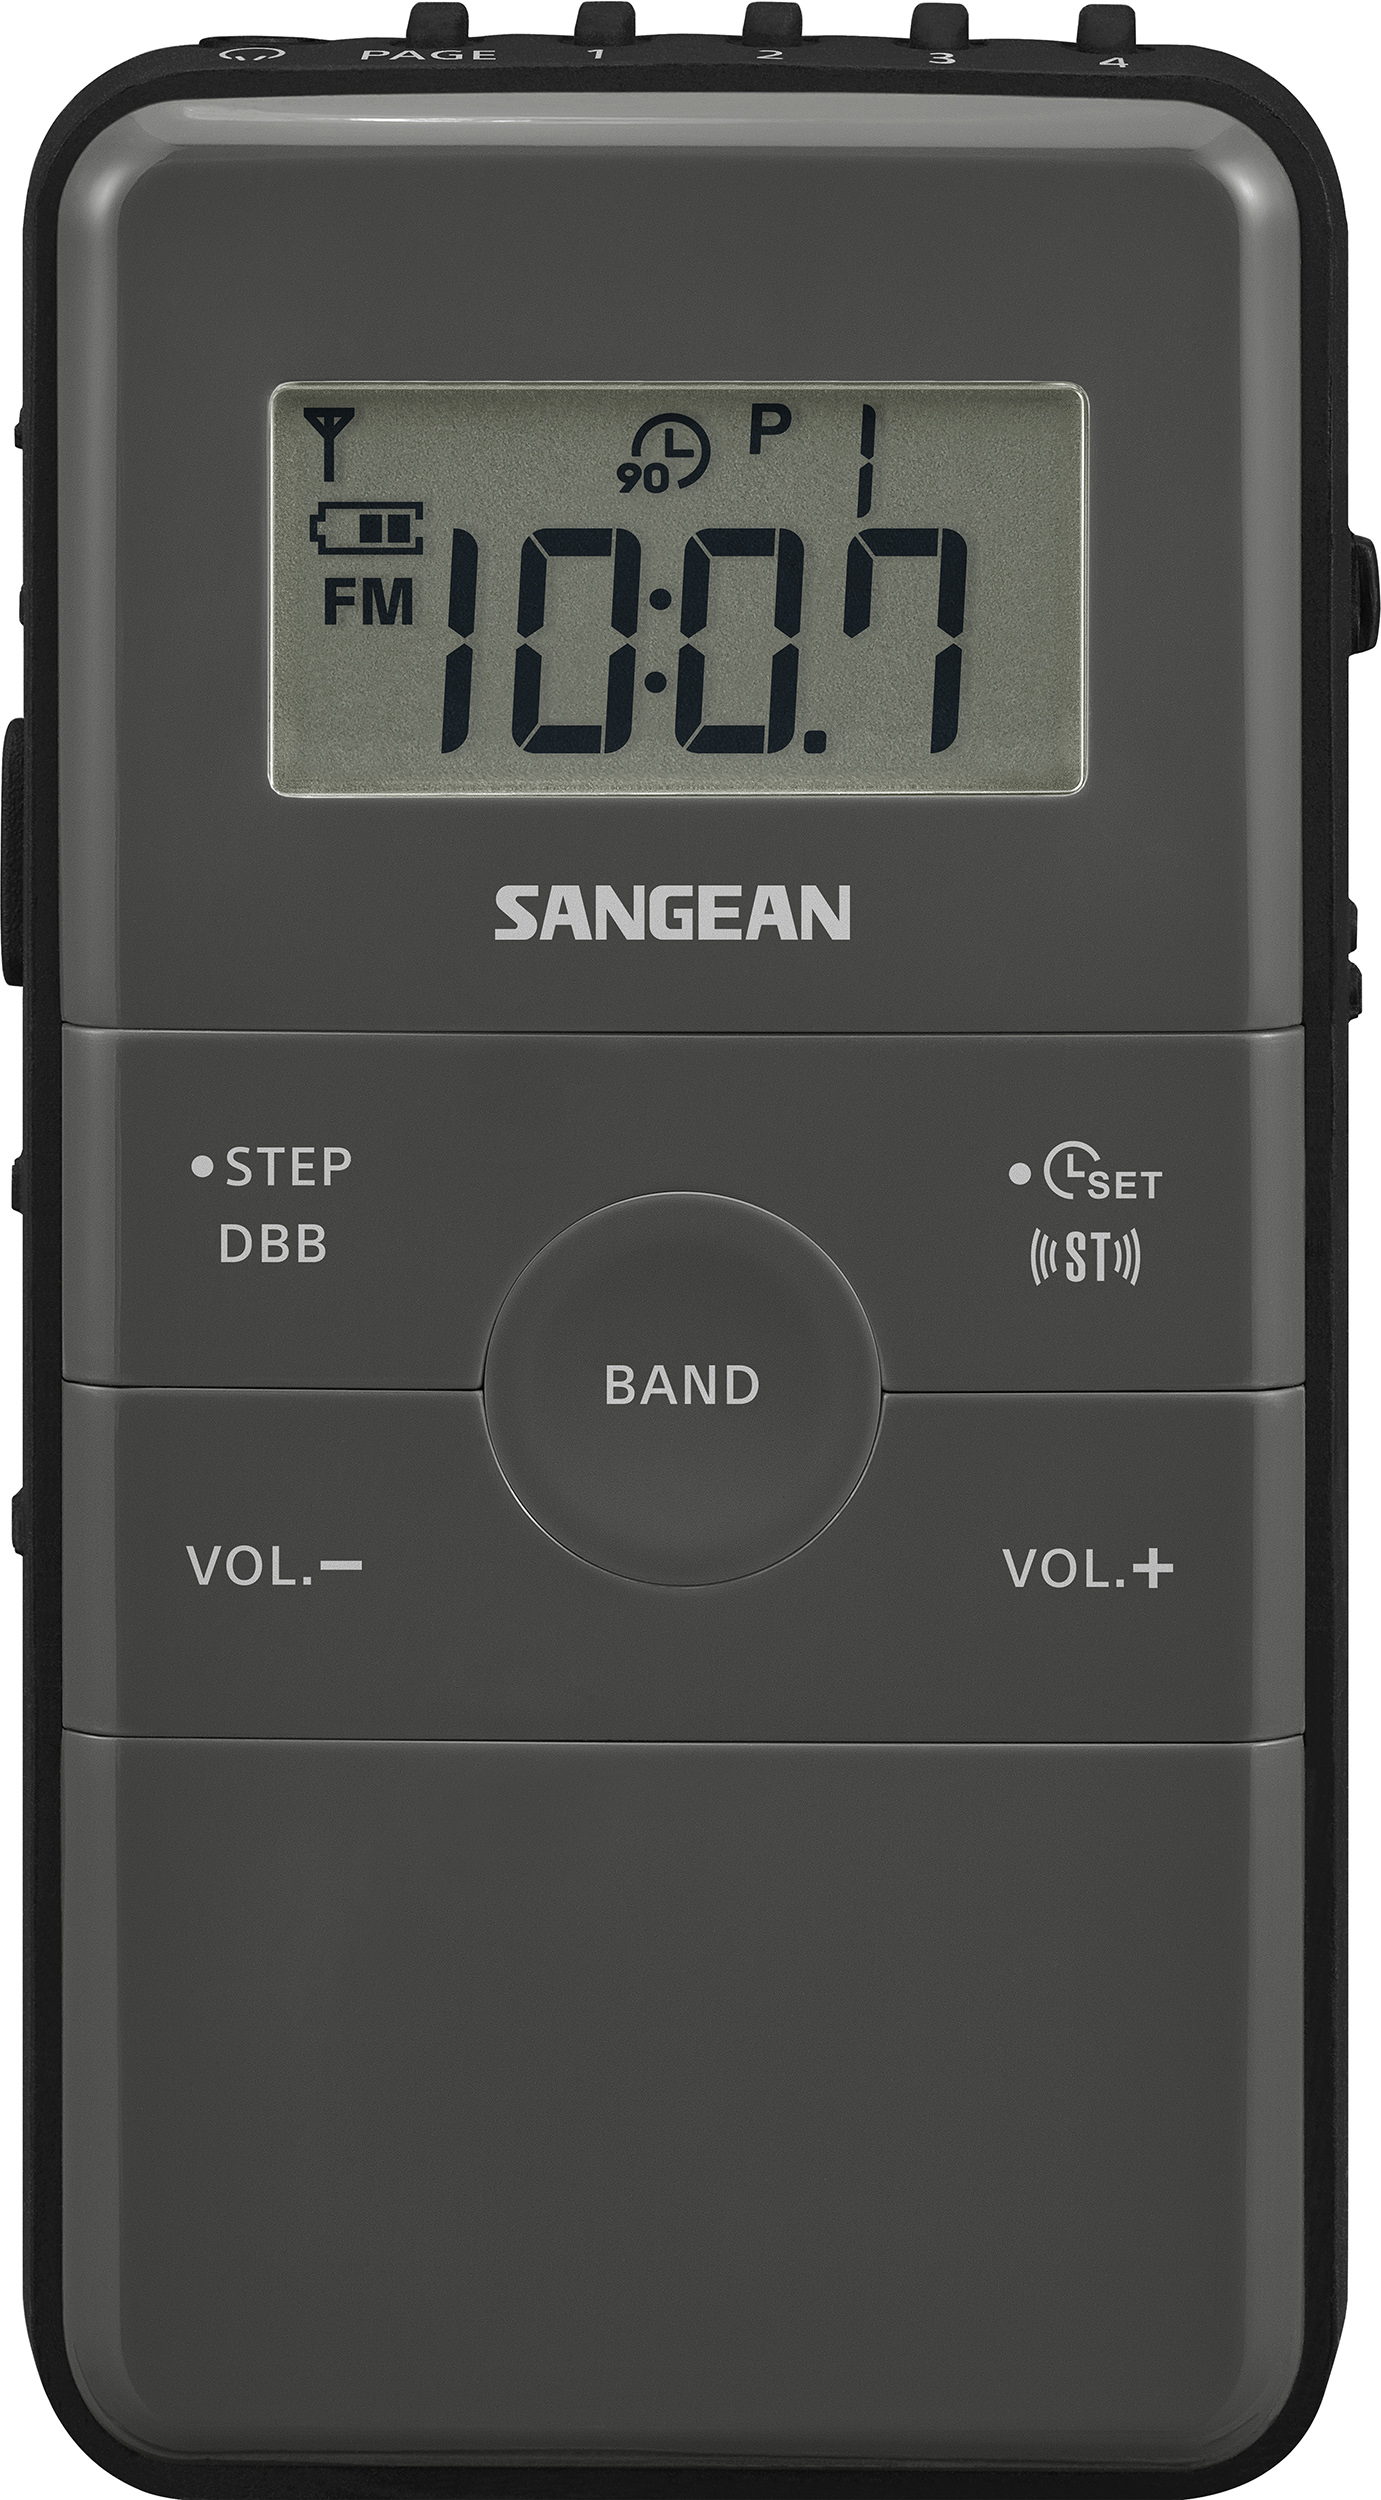 DT-140 (POCKET140), pocket radio FM/AM, rechargeable, grey/black